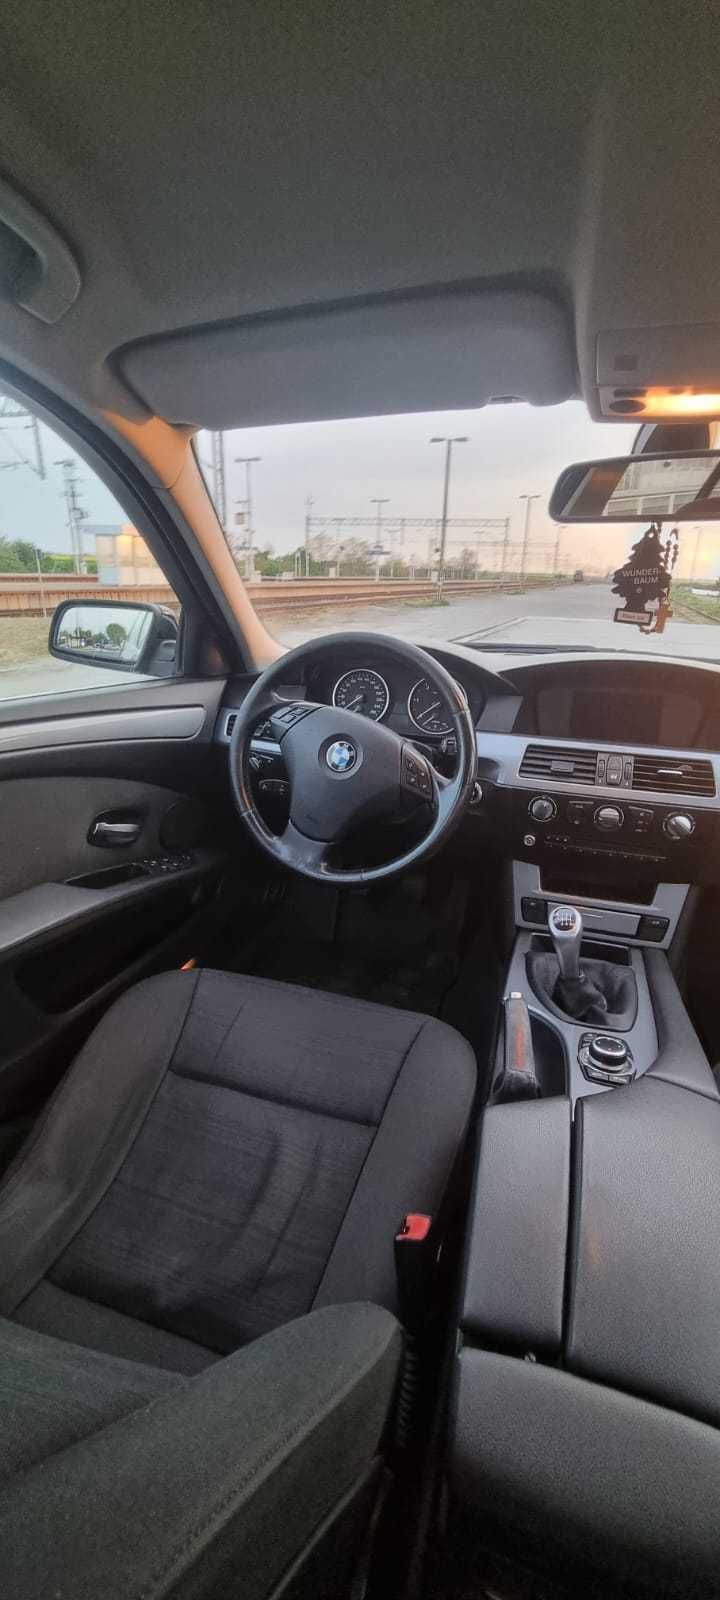 BMW 520d 2009 rok